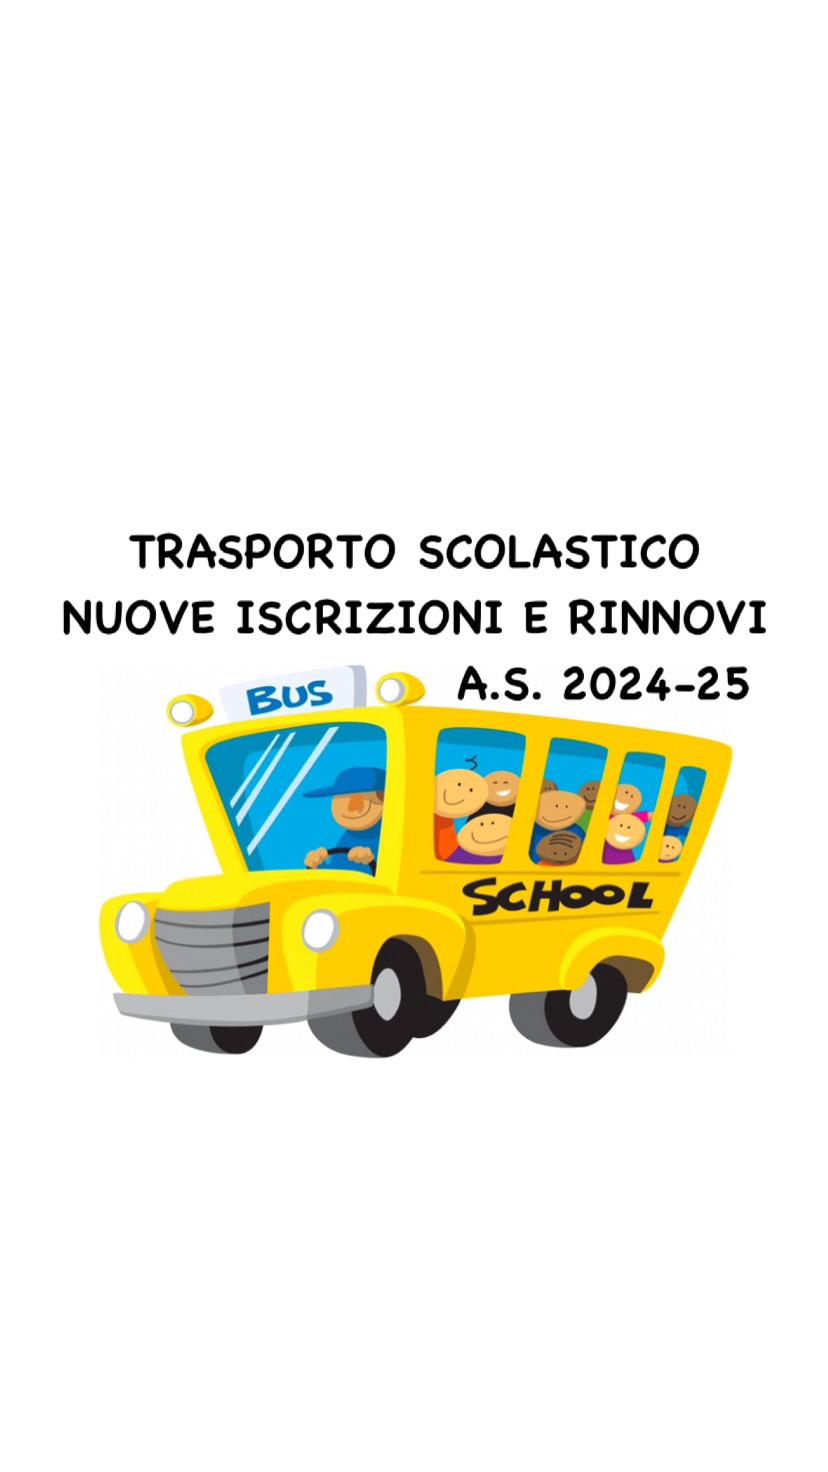 Iscrizioni e rinnovi servizio trasporto anno scolastico 2024-25